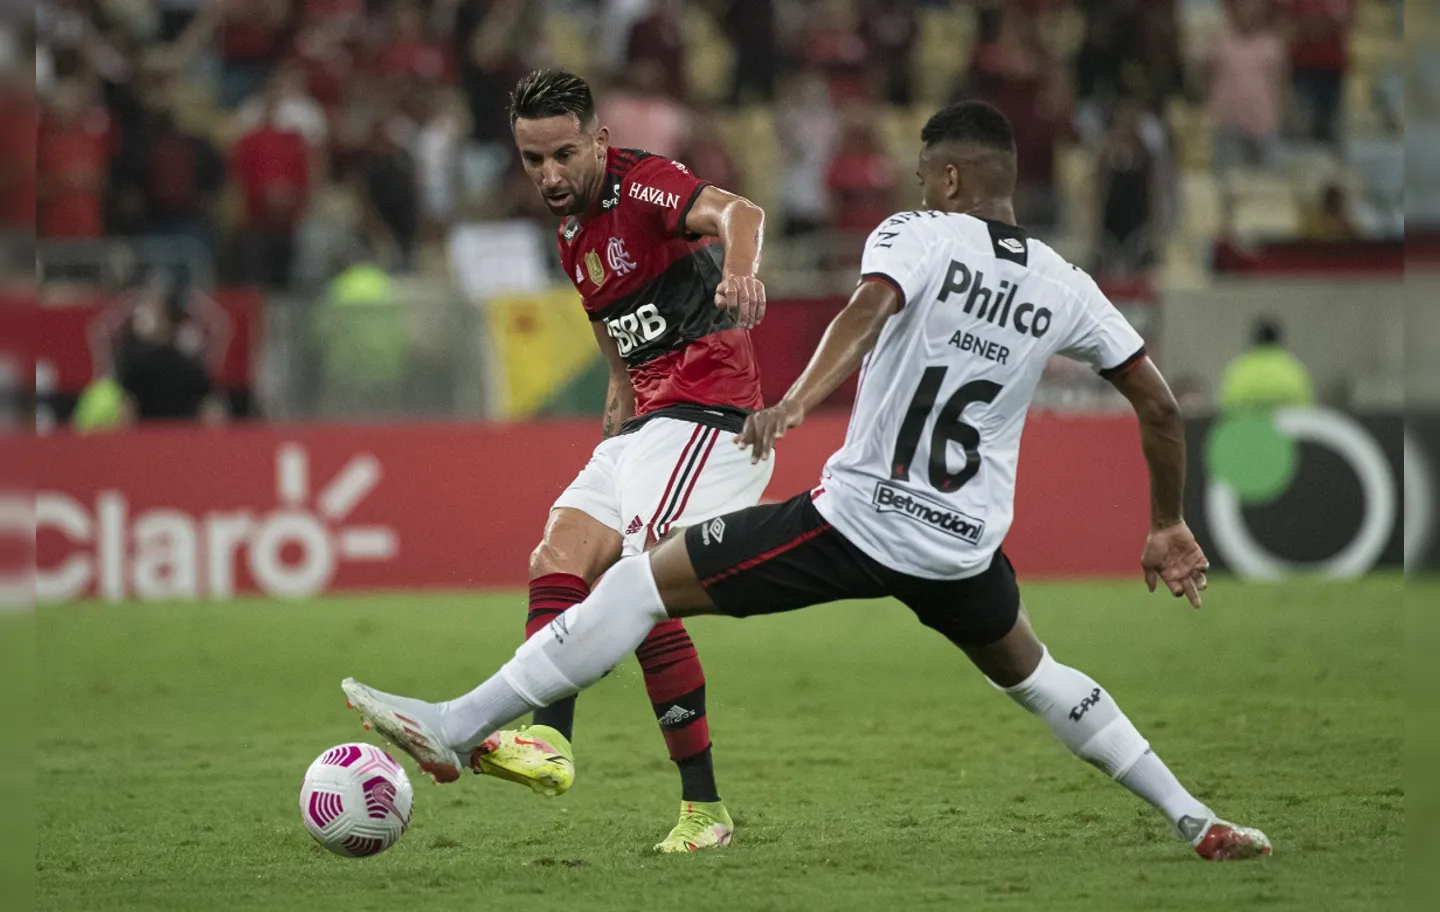 O Furacão irá enfrentar o Galo na final do torneio, em partidas que acontecem em dezembro | Foto: Alexandre Vidal | CR Flamengo